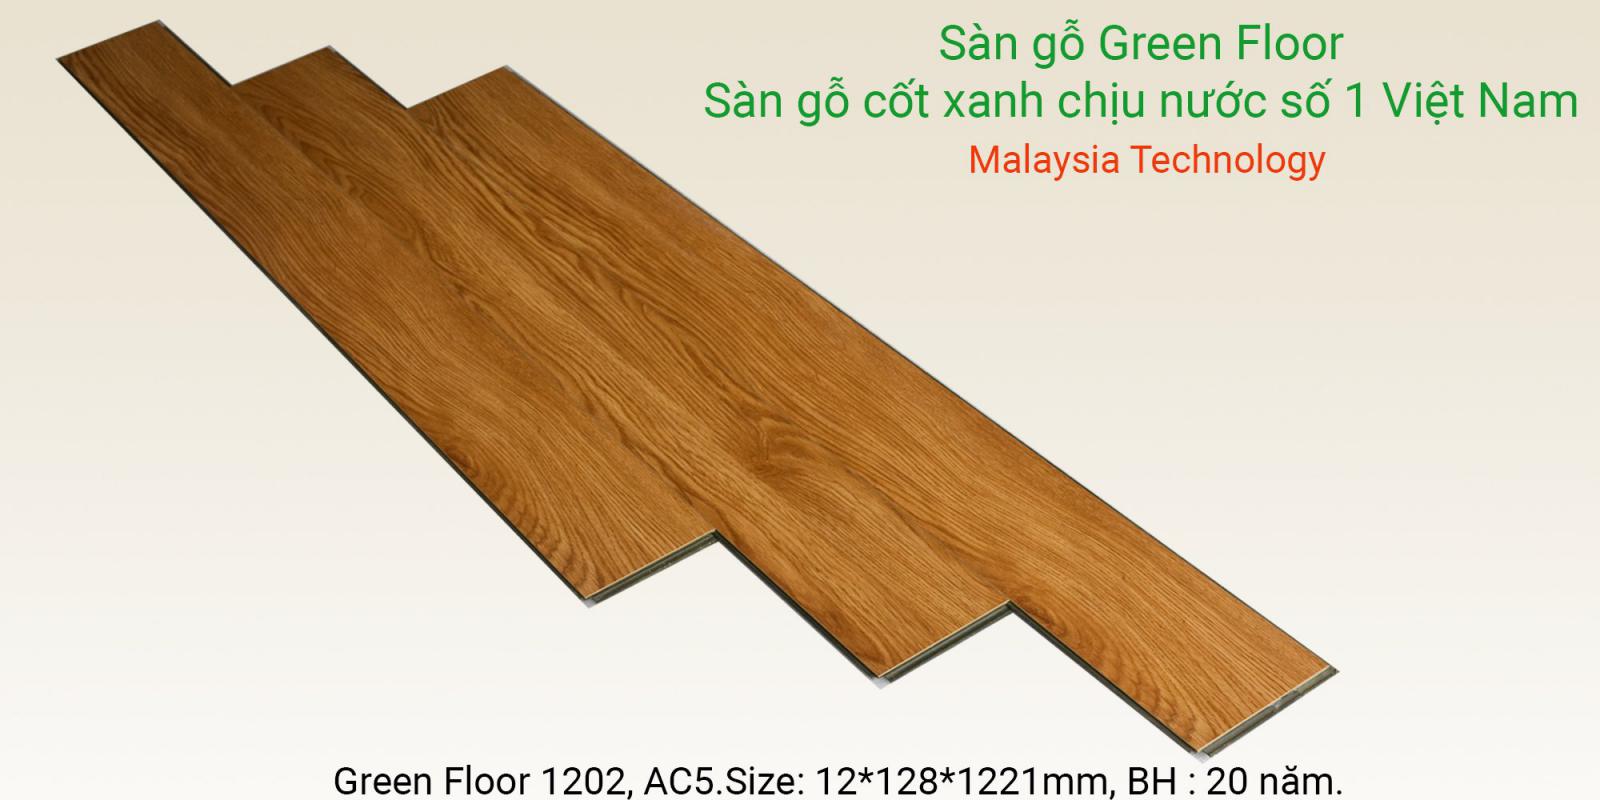 Sàn gỗ Greenfloor 1202